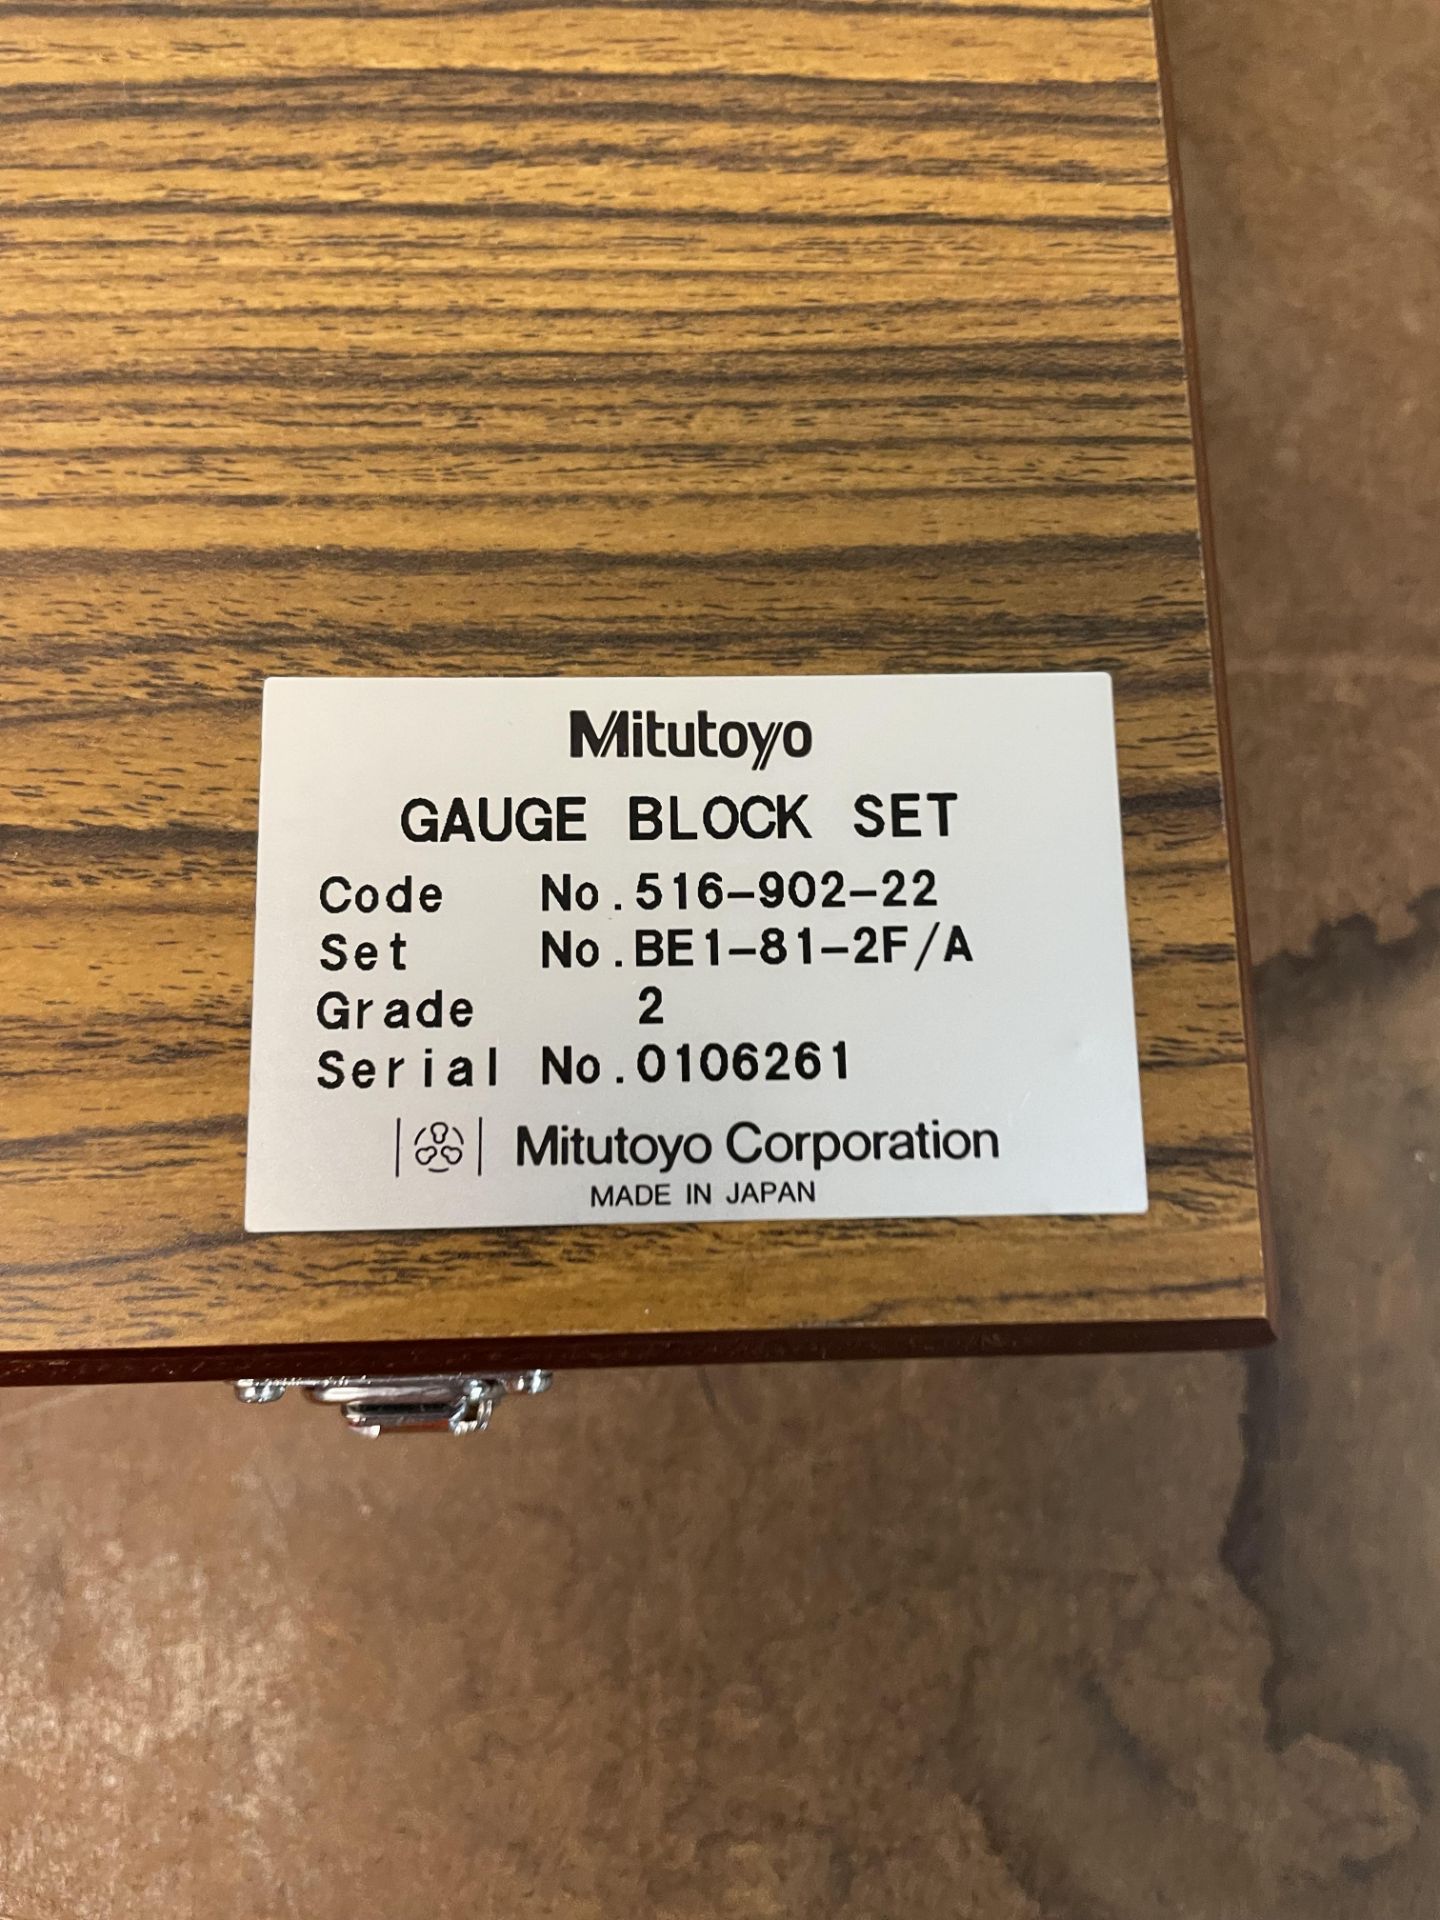 Mitutoyo New Gauge Block Set - Image 2 of 3